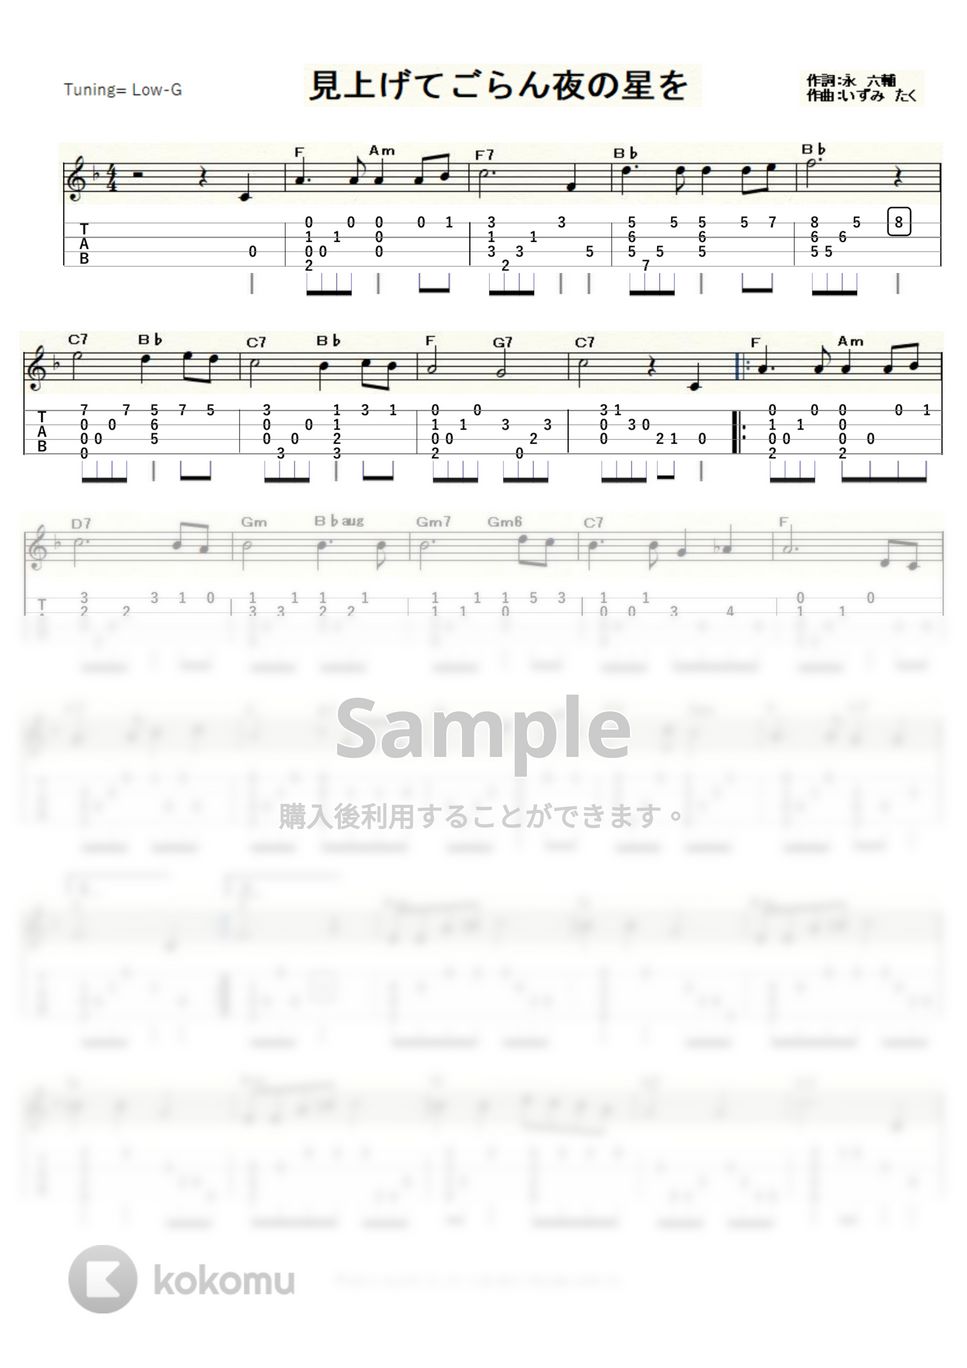 坂本九 - 見上げてごらん夜の星を (ｳｸﾚﾚｿﾛ / Low-G / 中級) by ukulelepapa